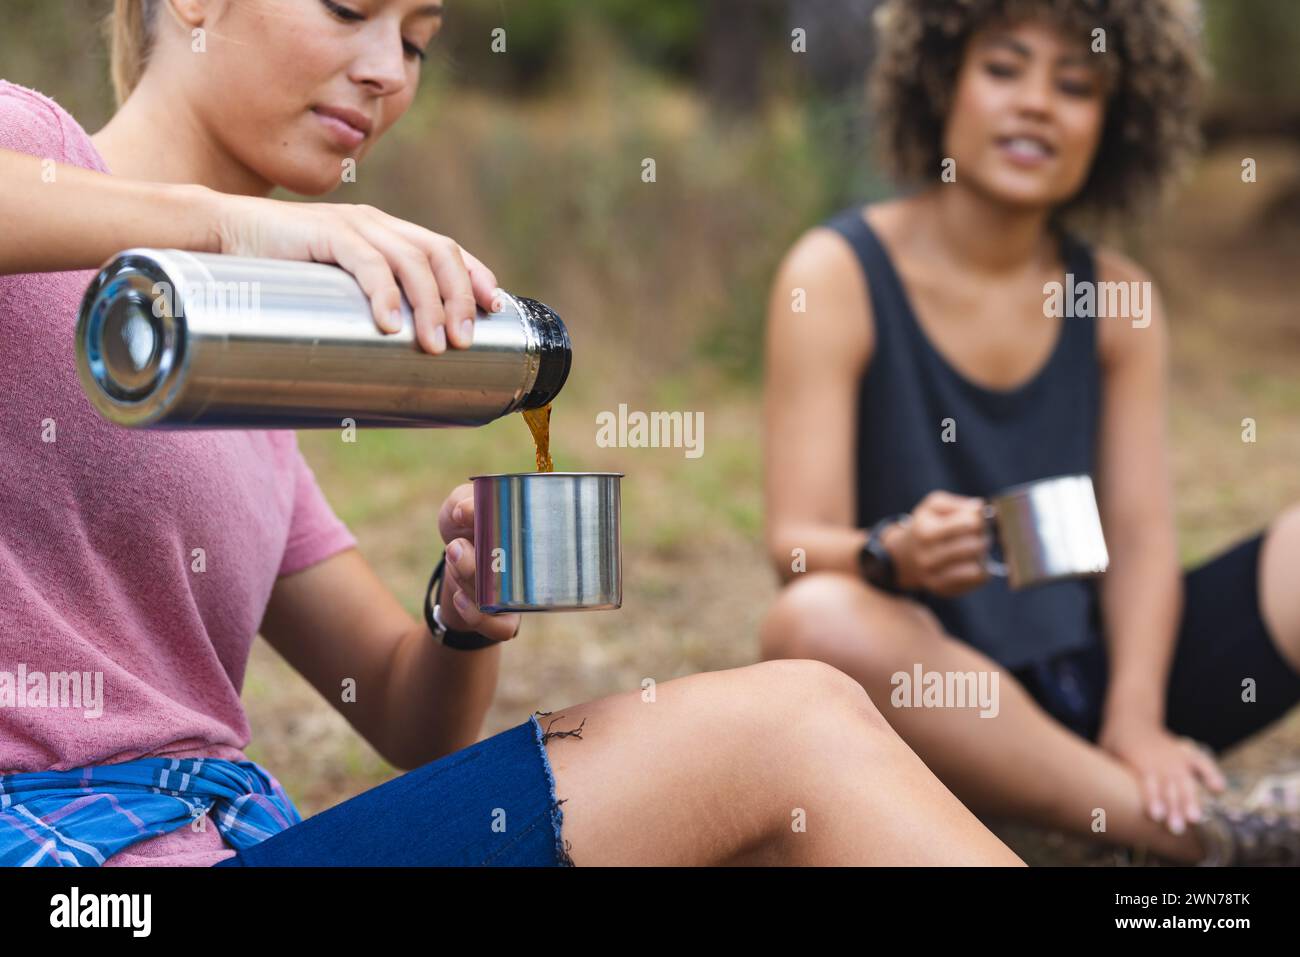 Junge kaukasische Frau gießt einen Drink aus einer Thermoskanne, junge, rassische Frau sieht zu Stockfoto